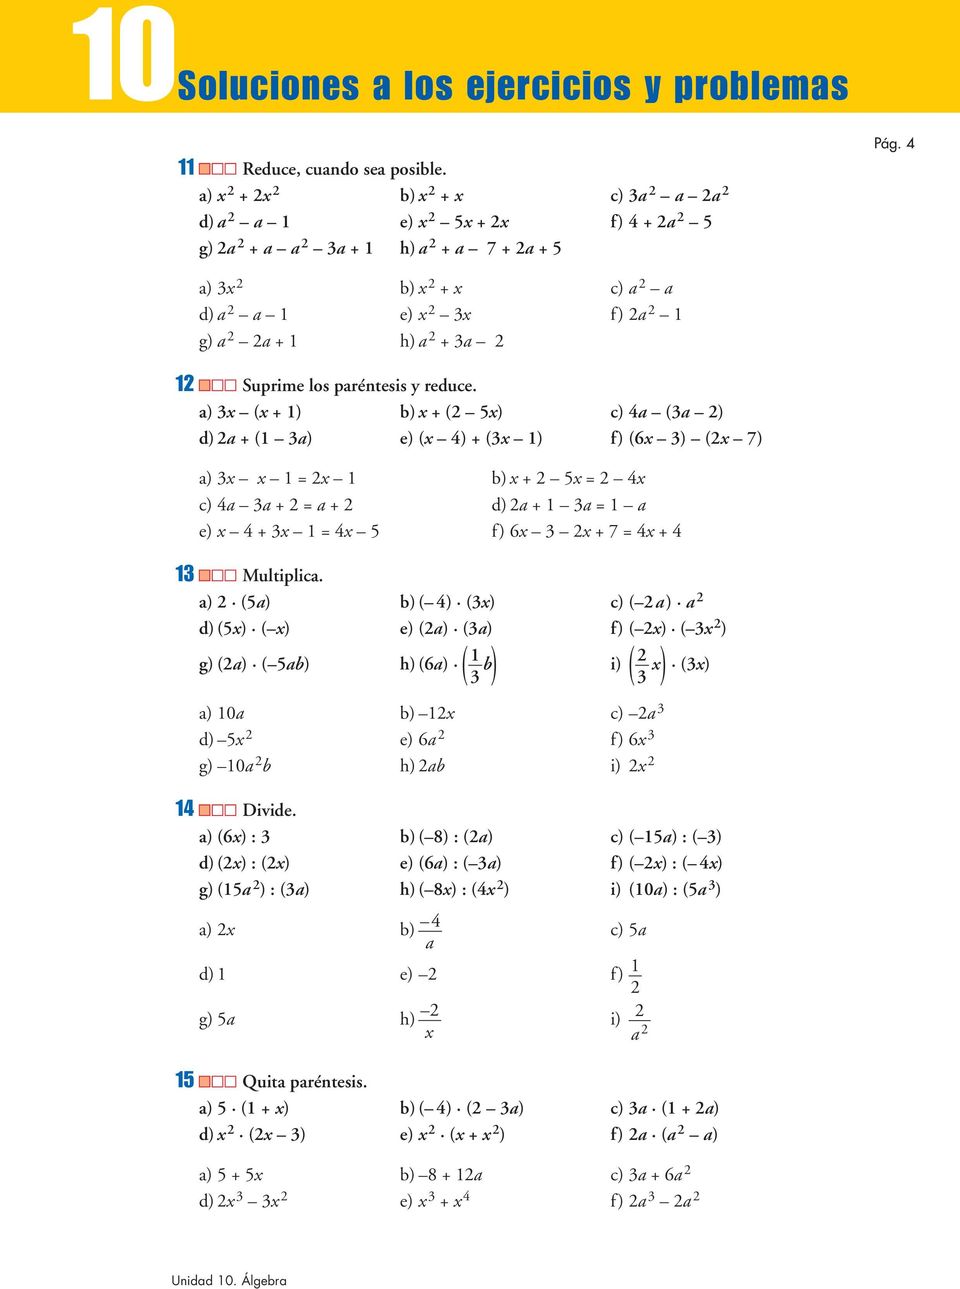 a) ( +) b) + ( ) c) 4a (a ) d) a + ( a) e) ( 4) + ( ) f) (6 ) ( 7) a) = b) + = 4 c) 4a a + = a + d)a + a = a e) 4 + = 4 f) 6 + 7 = 4 +4 Multiplica.